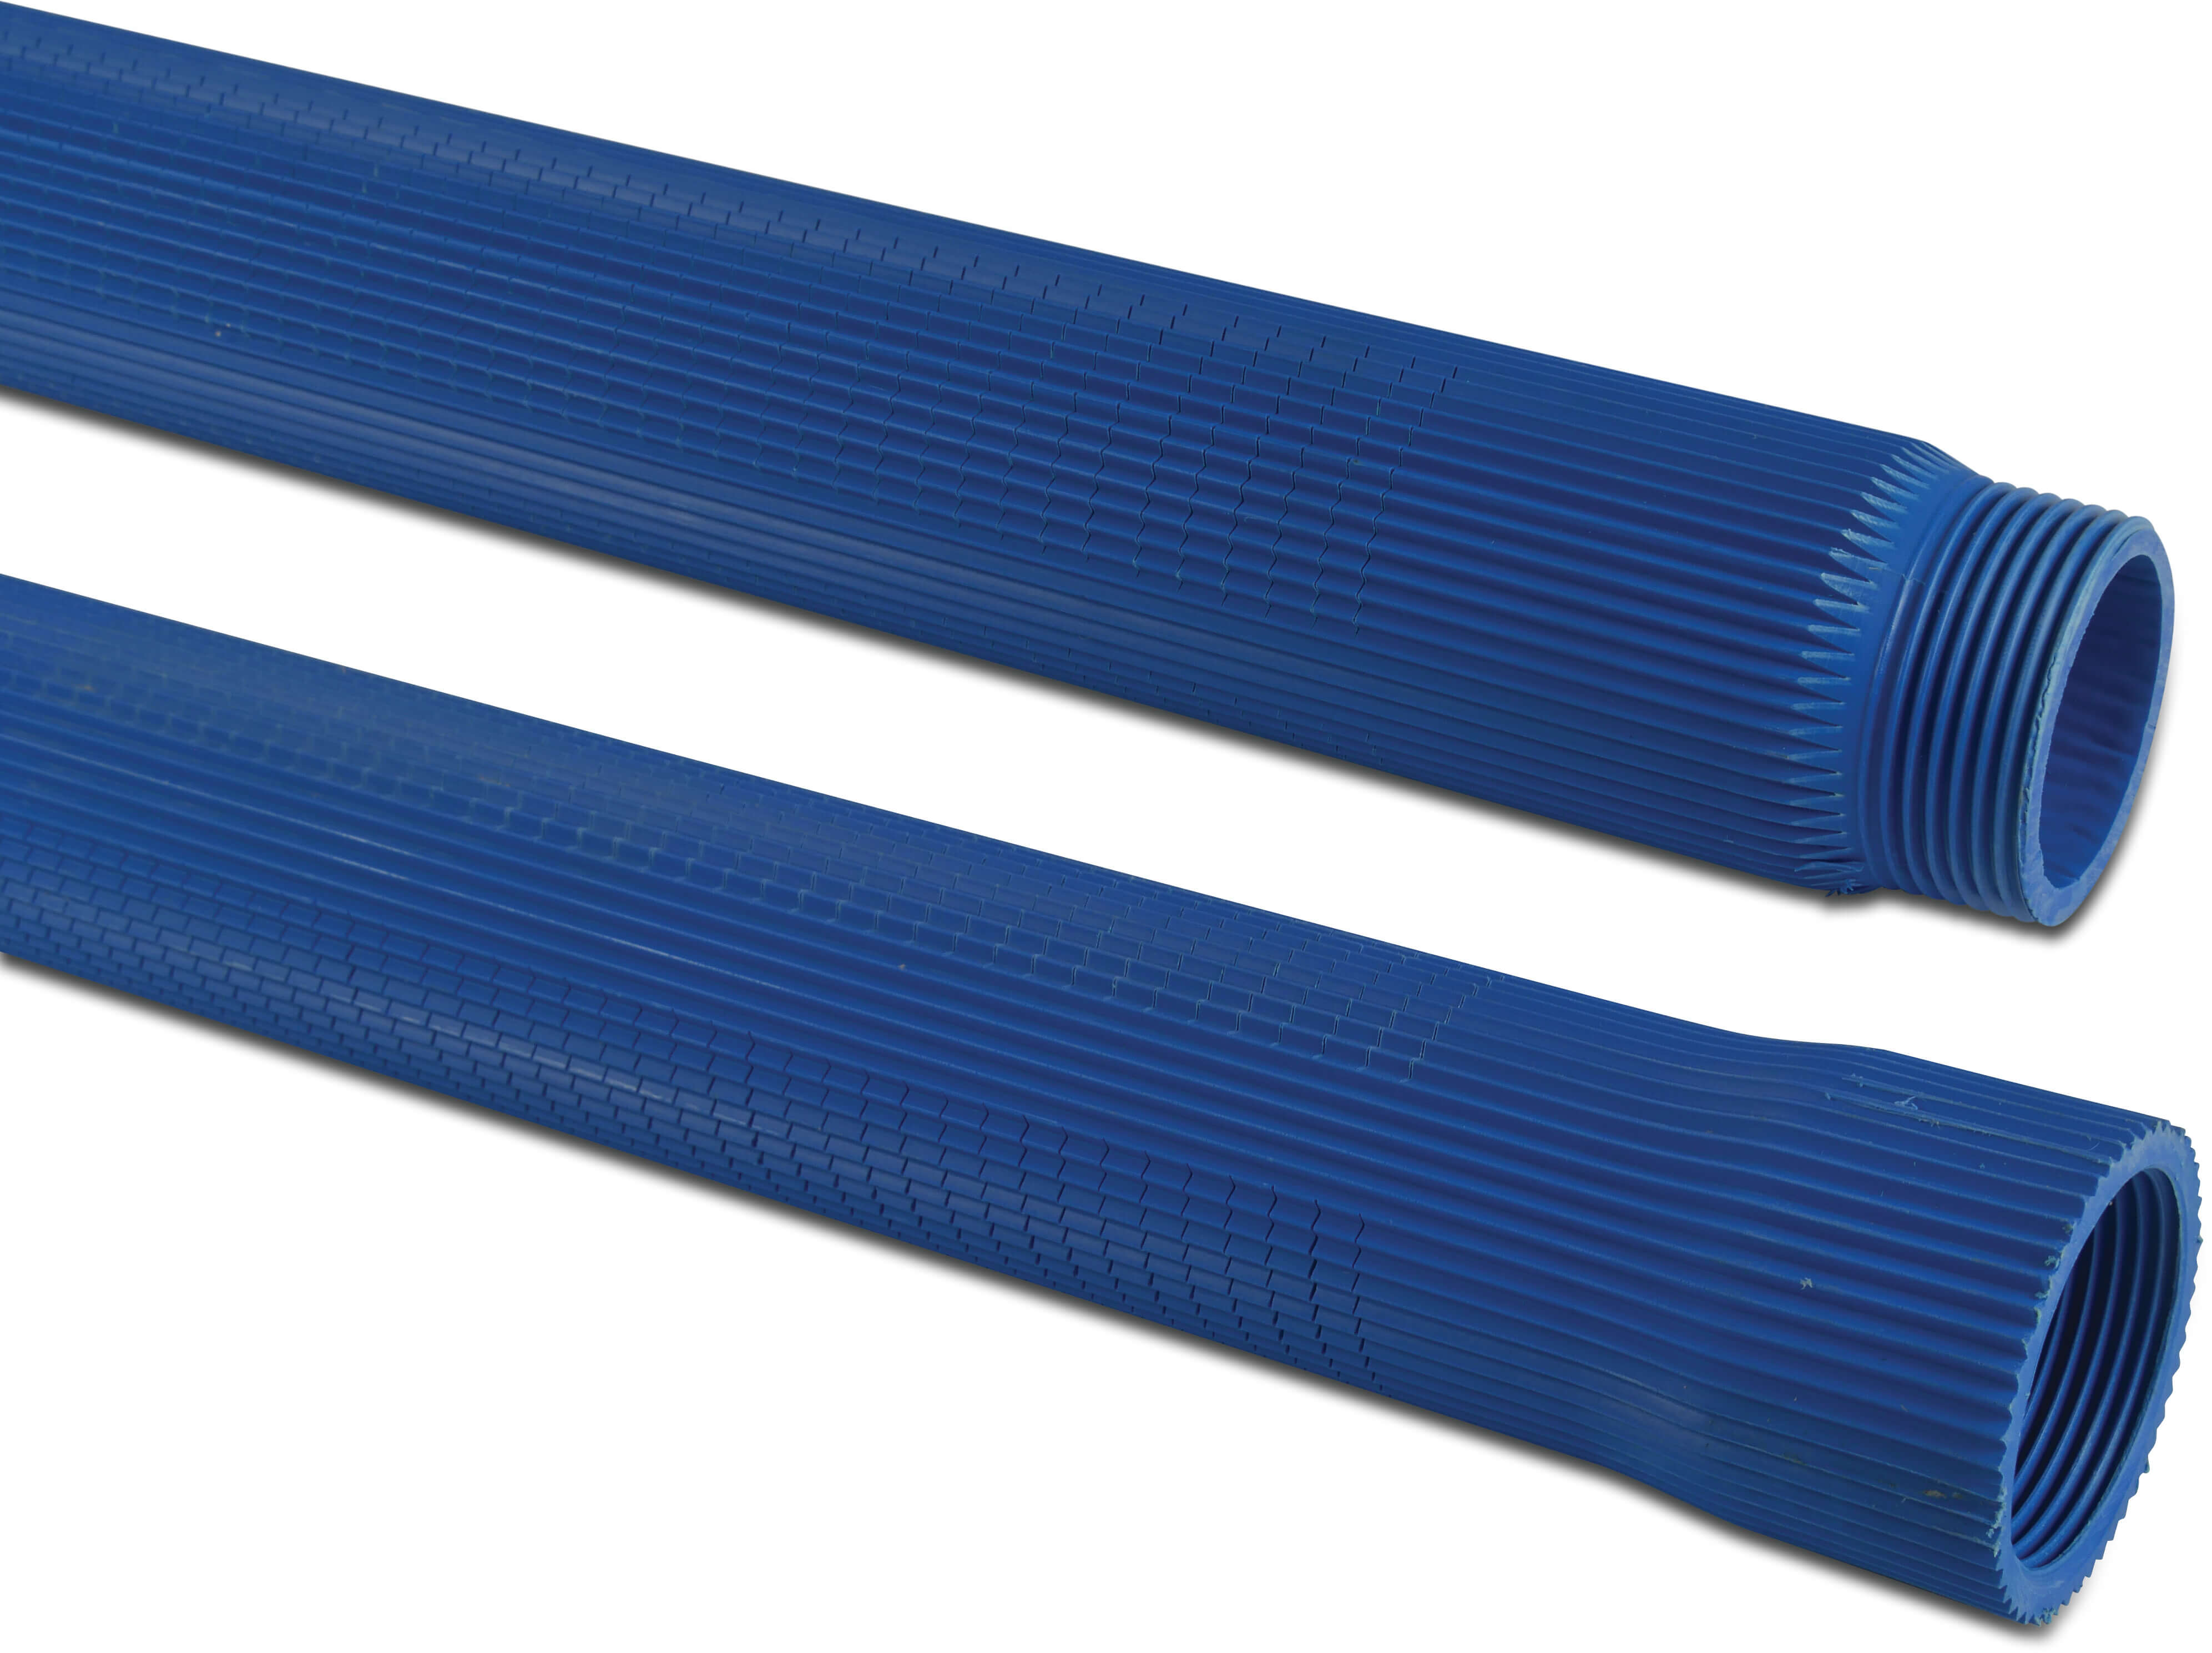 Rura szczelinowa PVC-U 1 1/4" GW x GZ 0,3 mm niebieski 1m type żebrowana